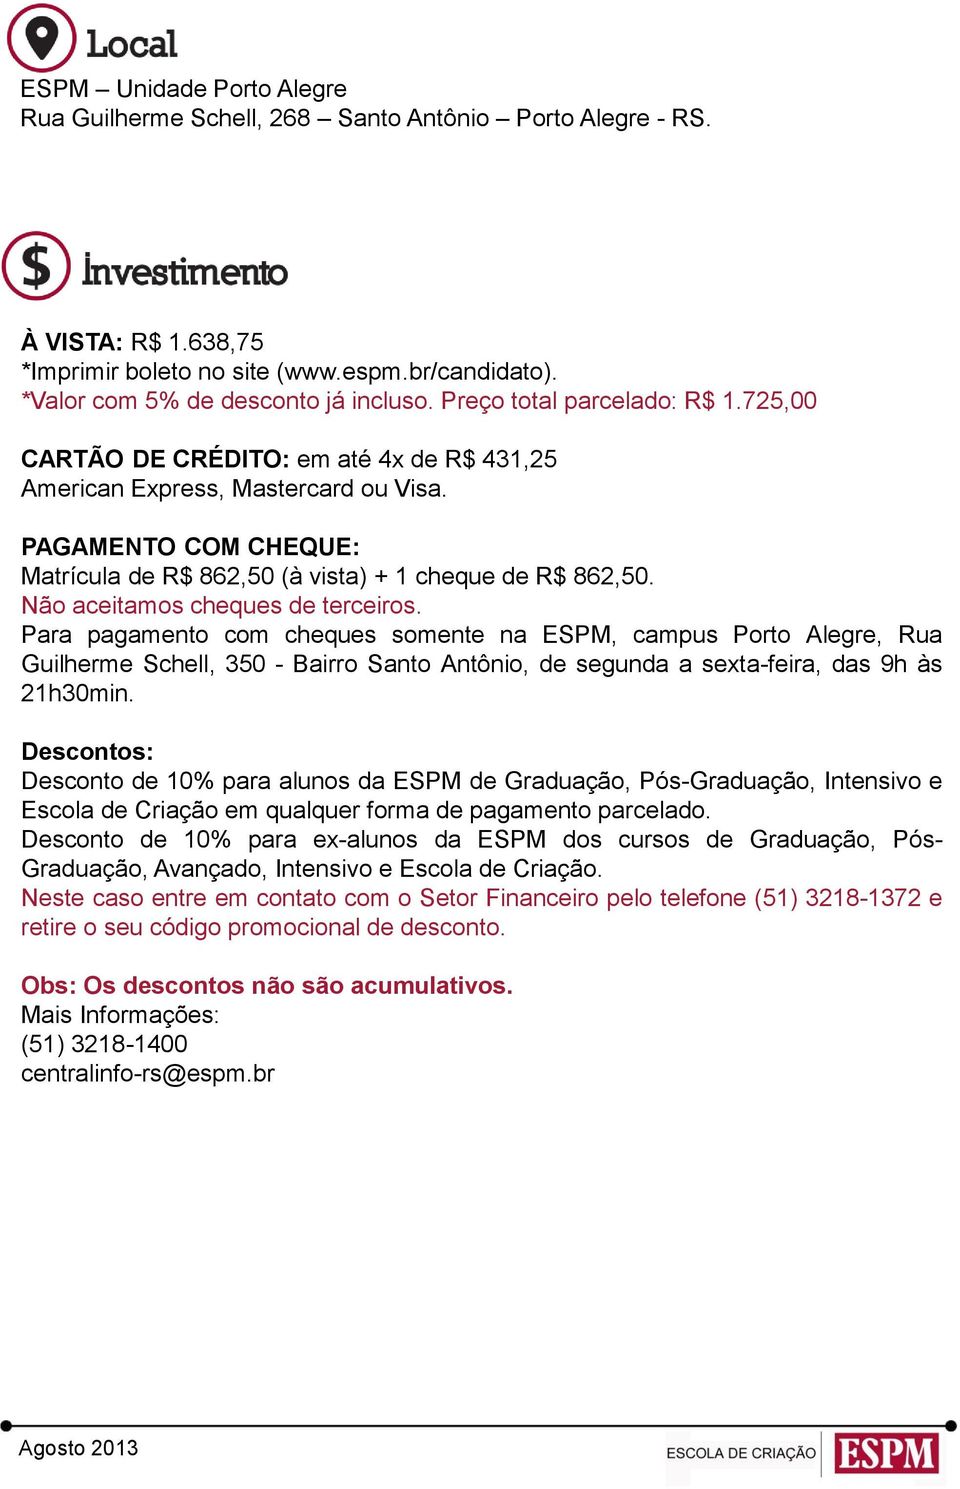 Não aceitamos cheques de terceiros. Para pagamento com cheques somente na ESPM, campus Porto Alegre, Rua Guilherme Schell, 350 - Bairro Santo Antônio, de segunda a sexta-feira, das 9h às 21h30min.